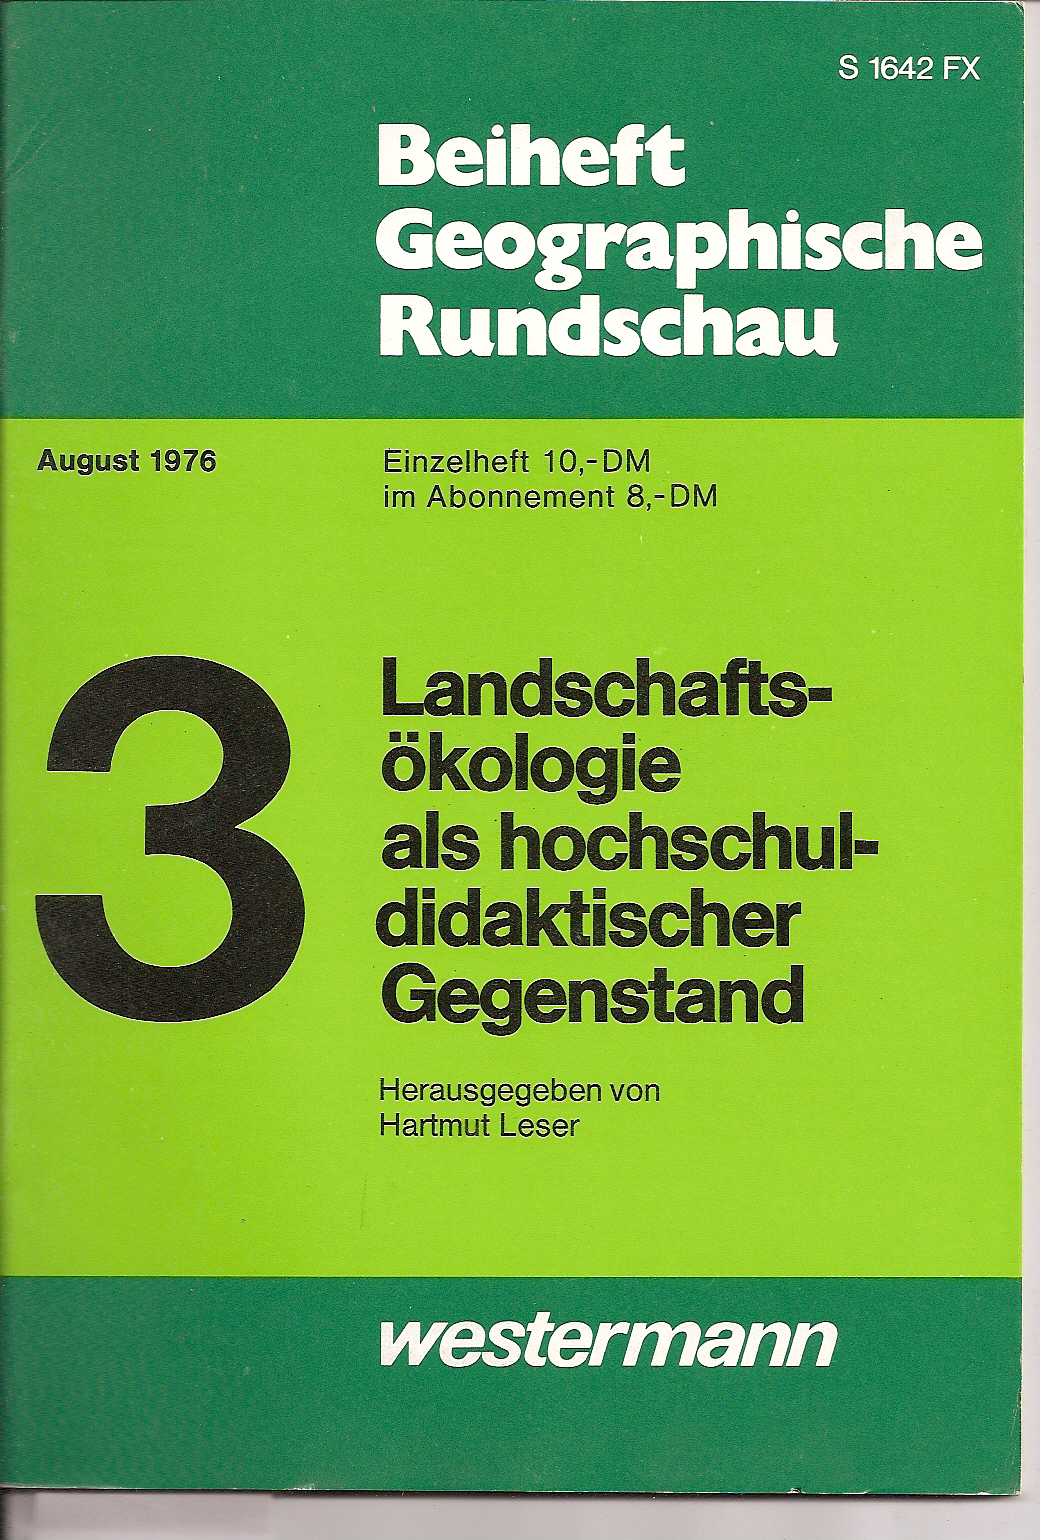 Beiheft Geographische Rundschau  August 1976 